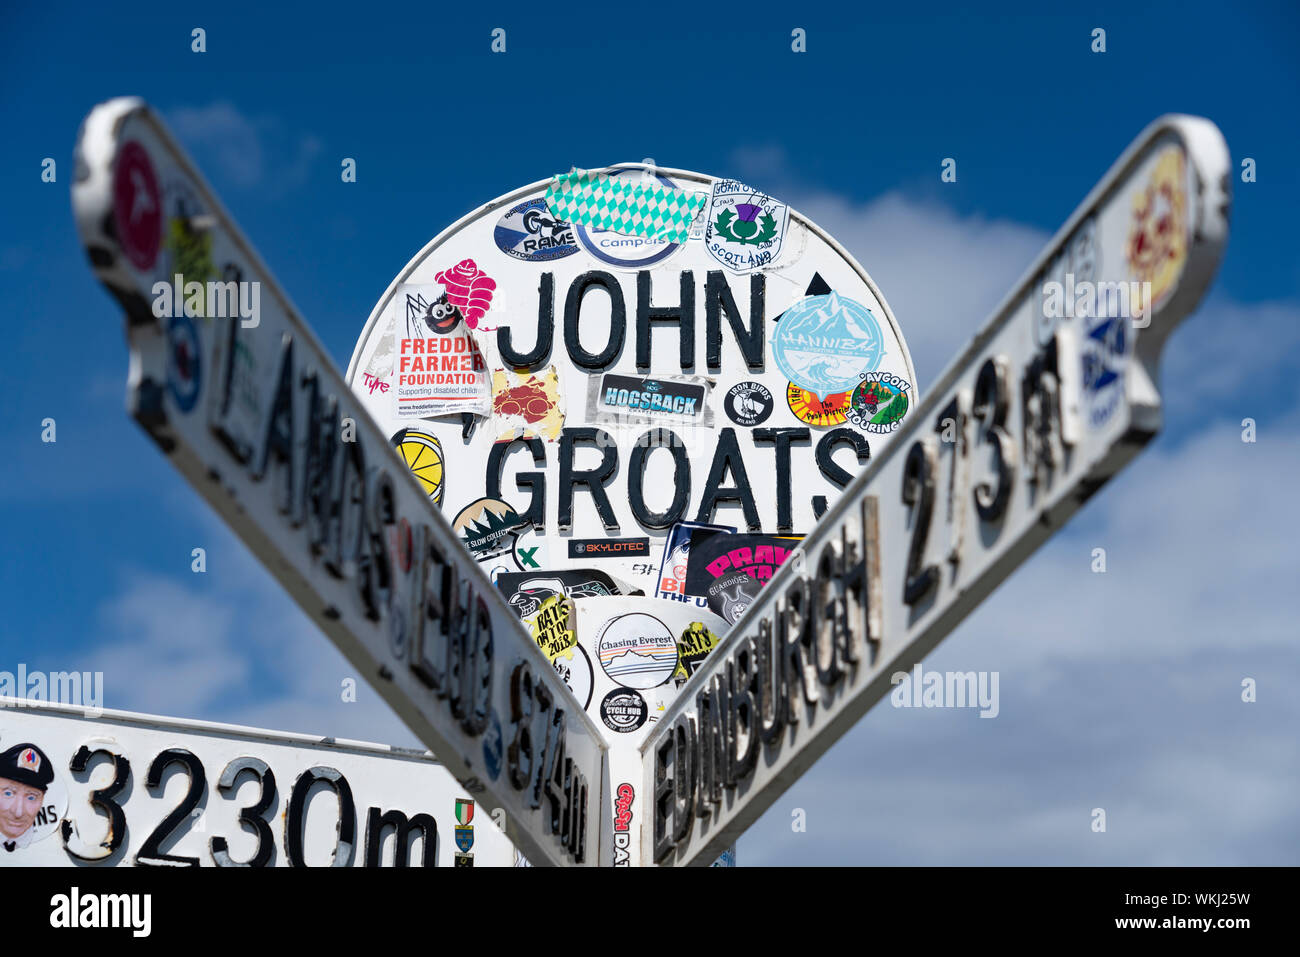 Marqueur de distance des panneaux de direction à John O' Groats, sur la côte nord 500 route automobile touristique dans le nord de l'Ecosse, Royaume-Uni Banque D'Images